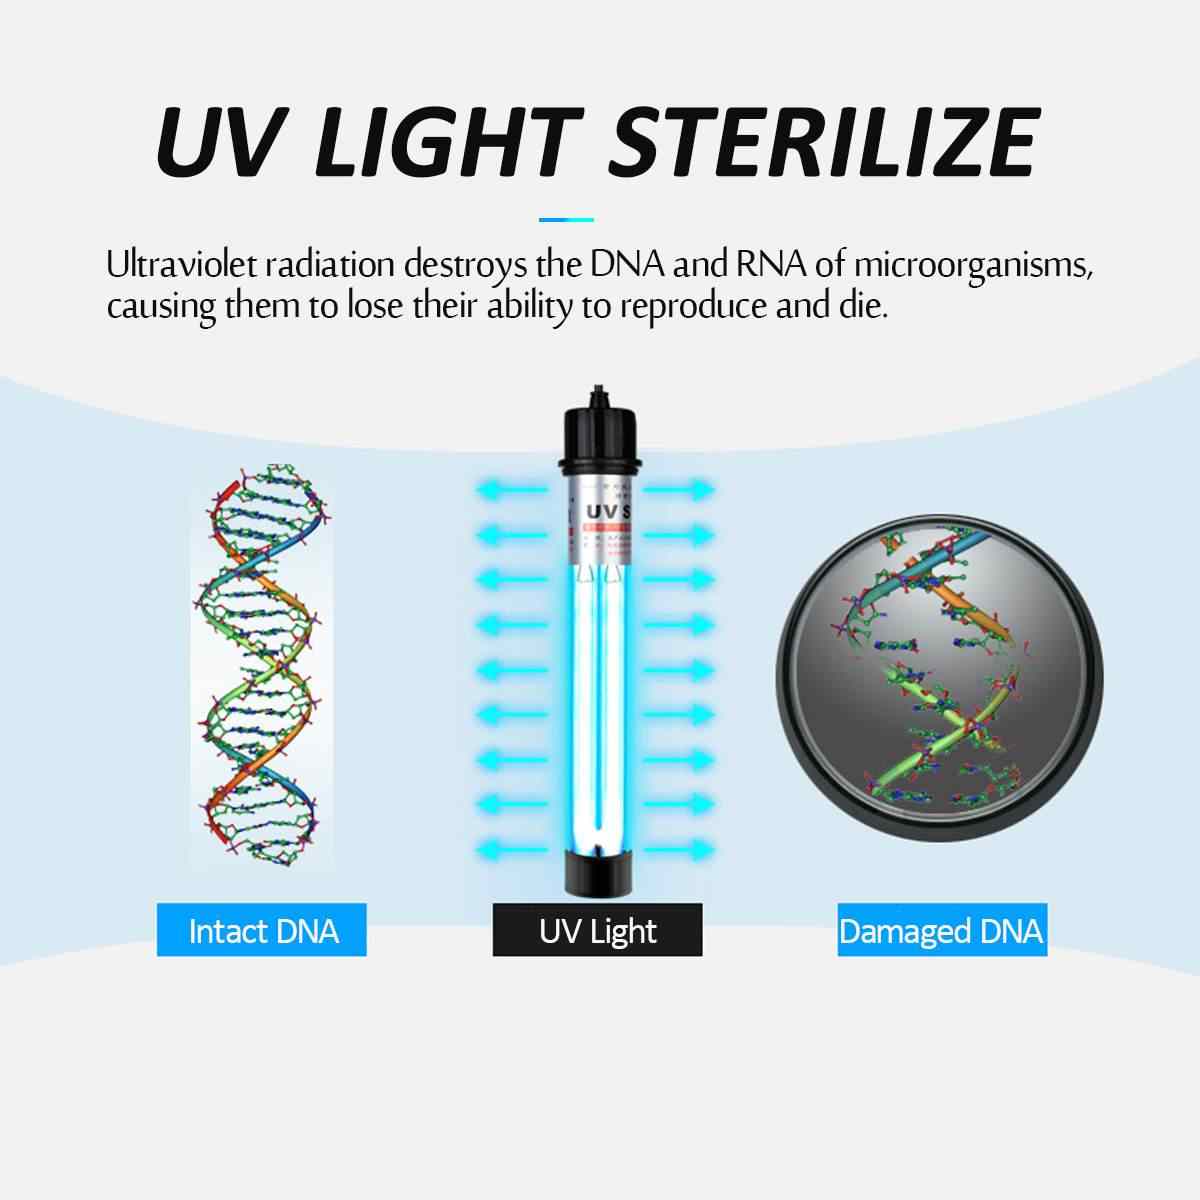 Đèn UV 60W Sterilization King Bóng Kép cao cấp, diệt tảo, diệt khuẩn cho bể cá, hồ cá, hồ thủy sinh siêu sạch